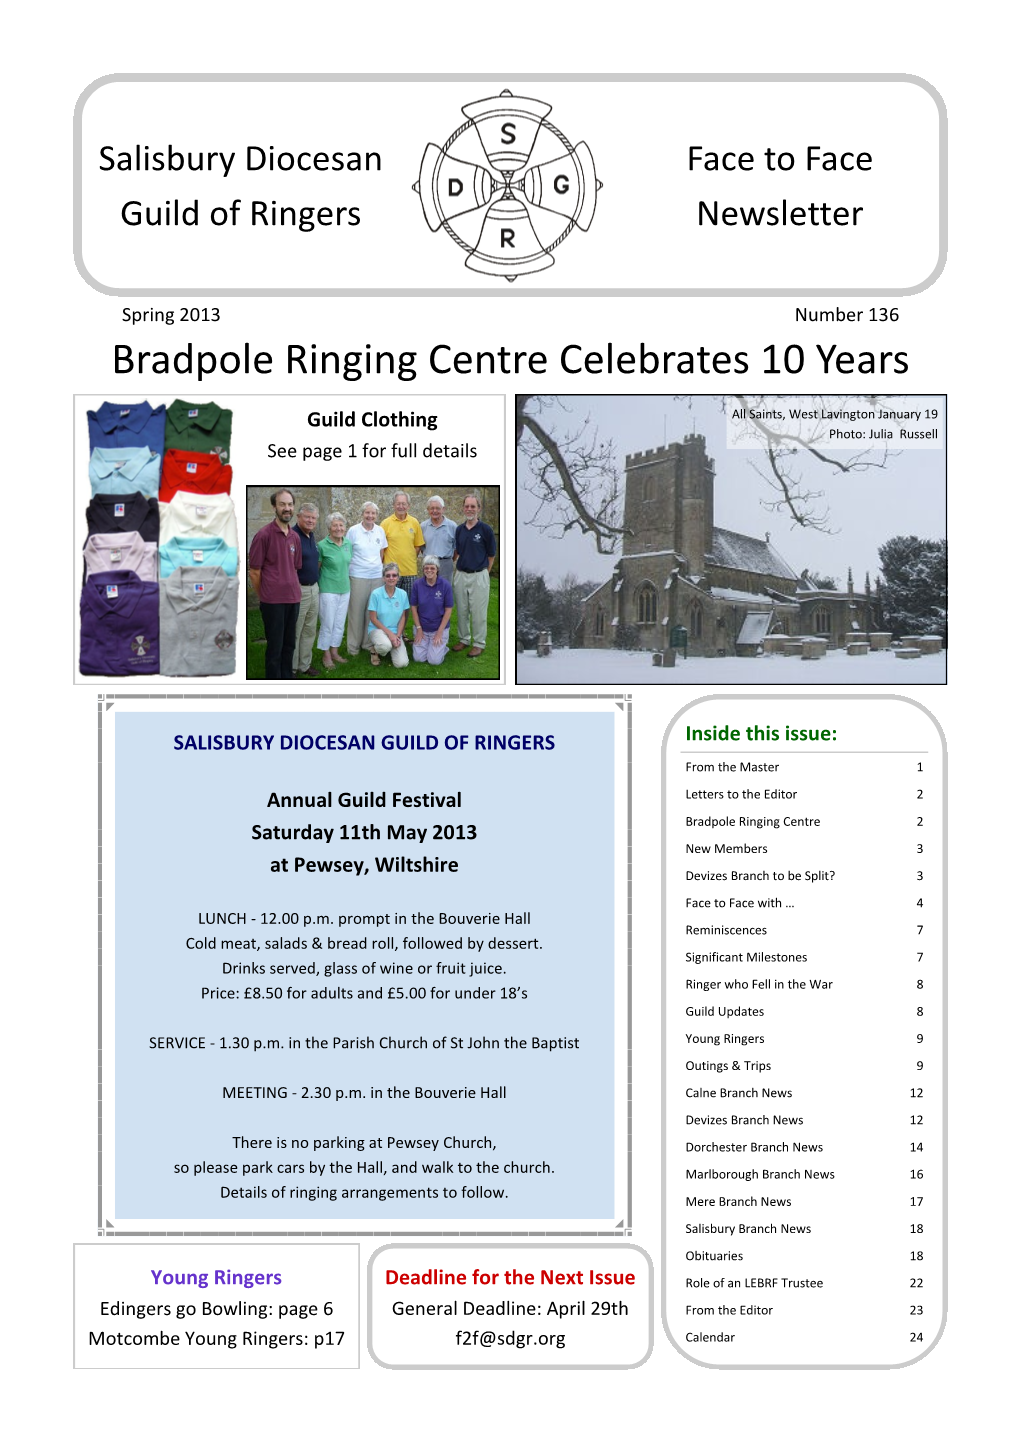 Bradpole Ringing Centre Celebrates 10 Years